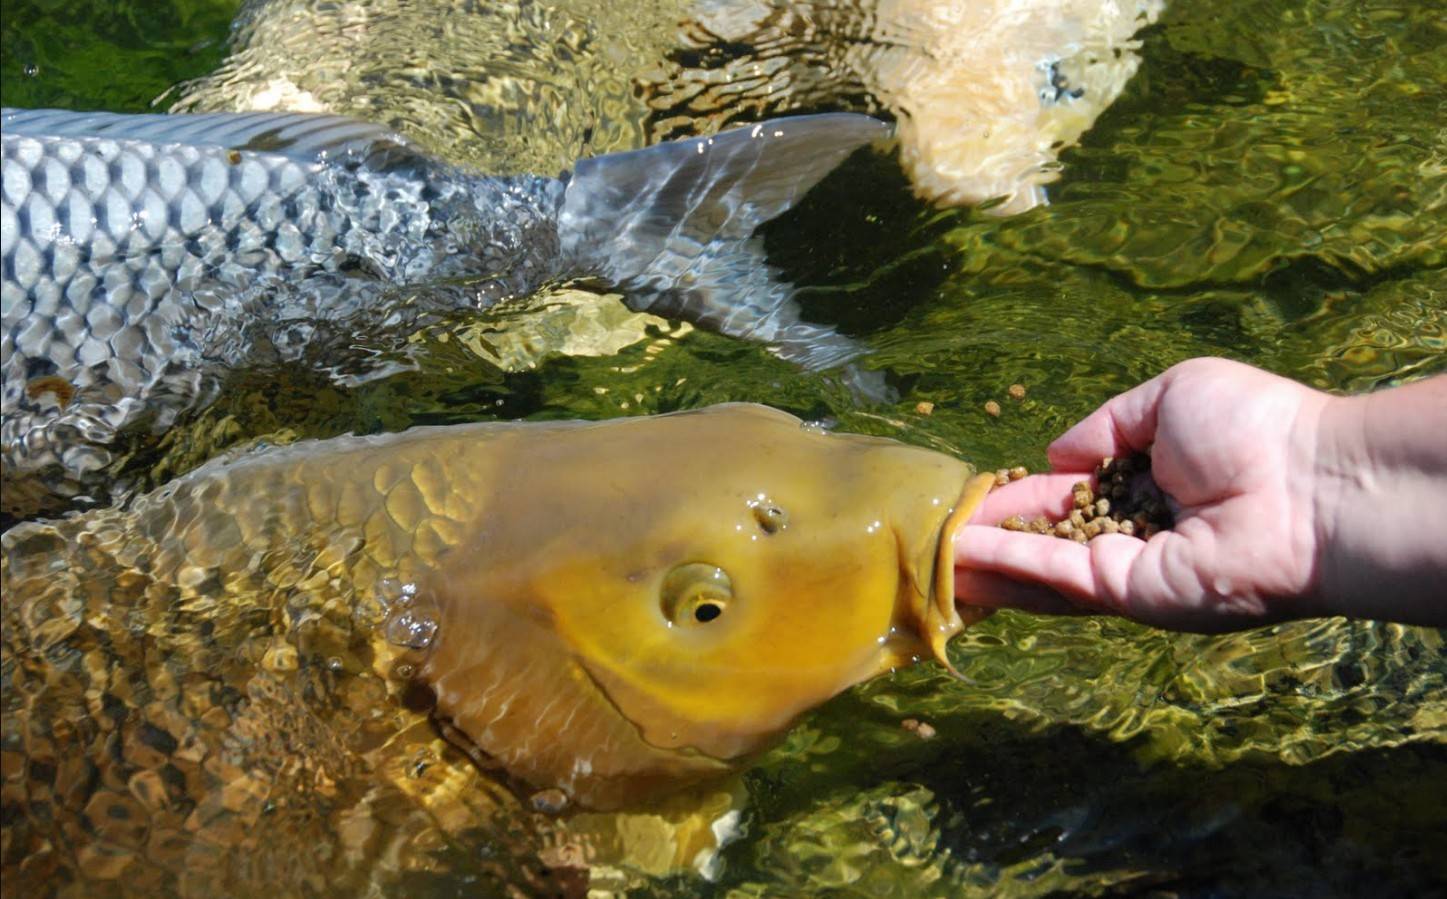 Карп рыба. образ жизни, среда обитания и как приготовить карпа | животный мир